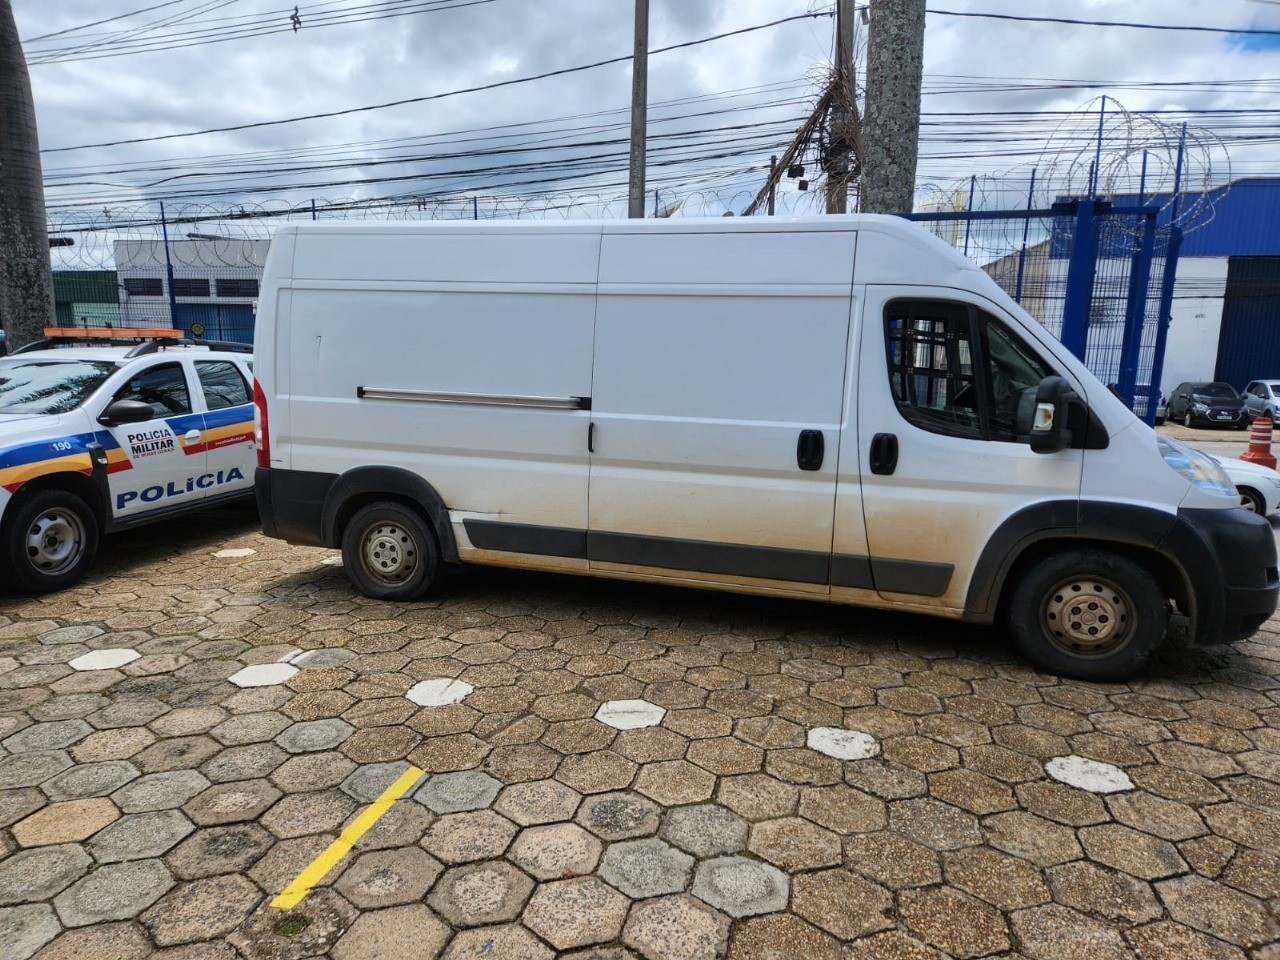 Quadrilha de SP é presa após roubo de carga de cigarros em bairro de Pouso Alegre, MG